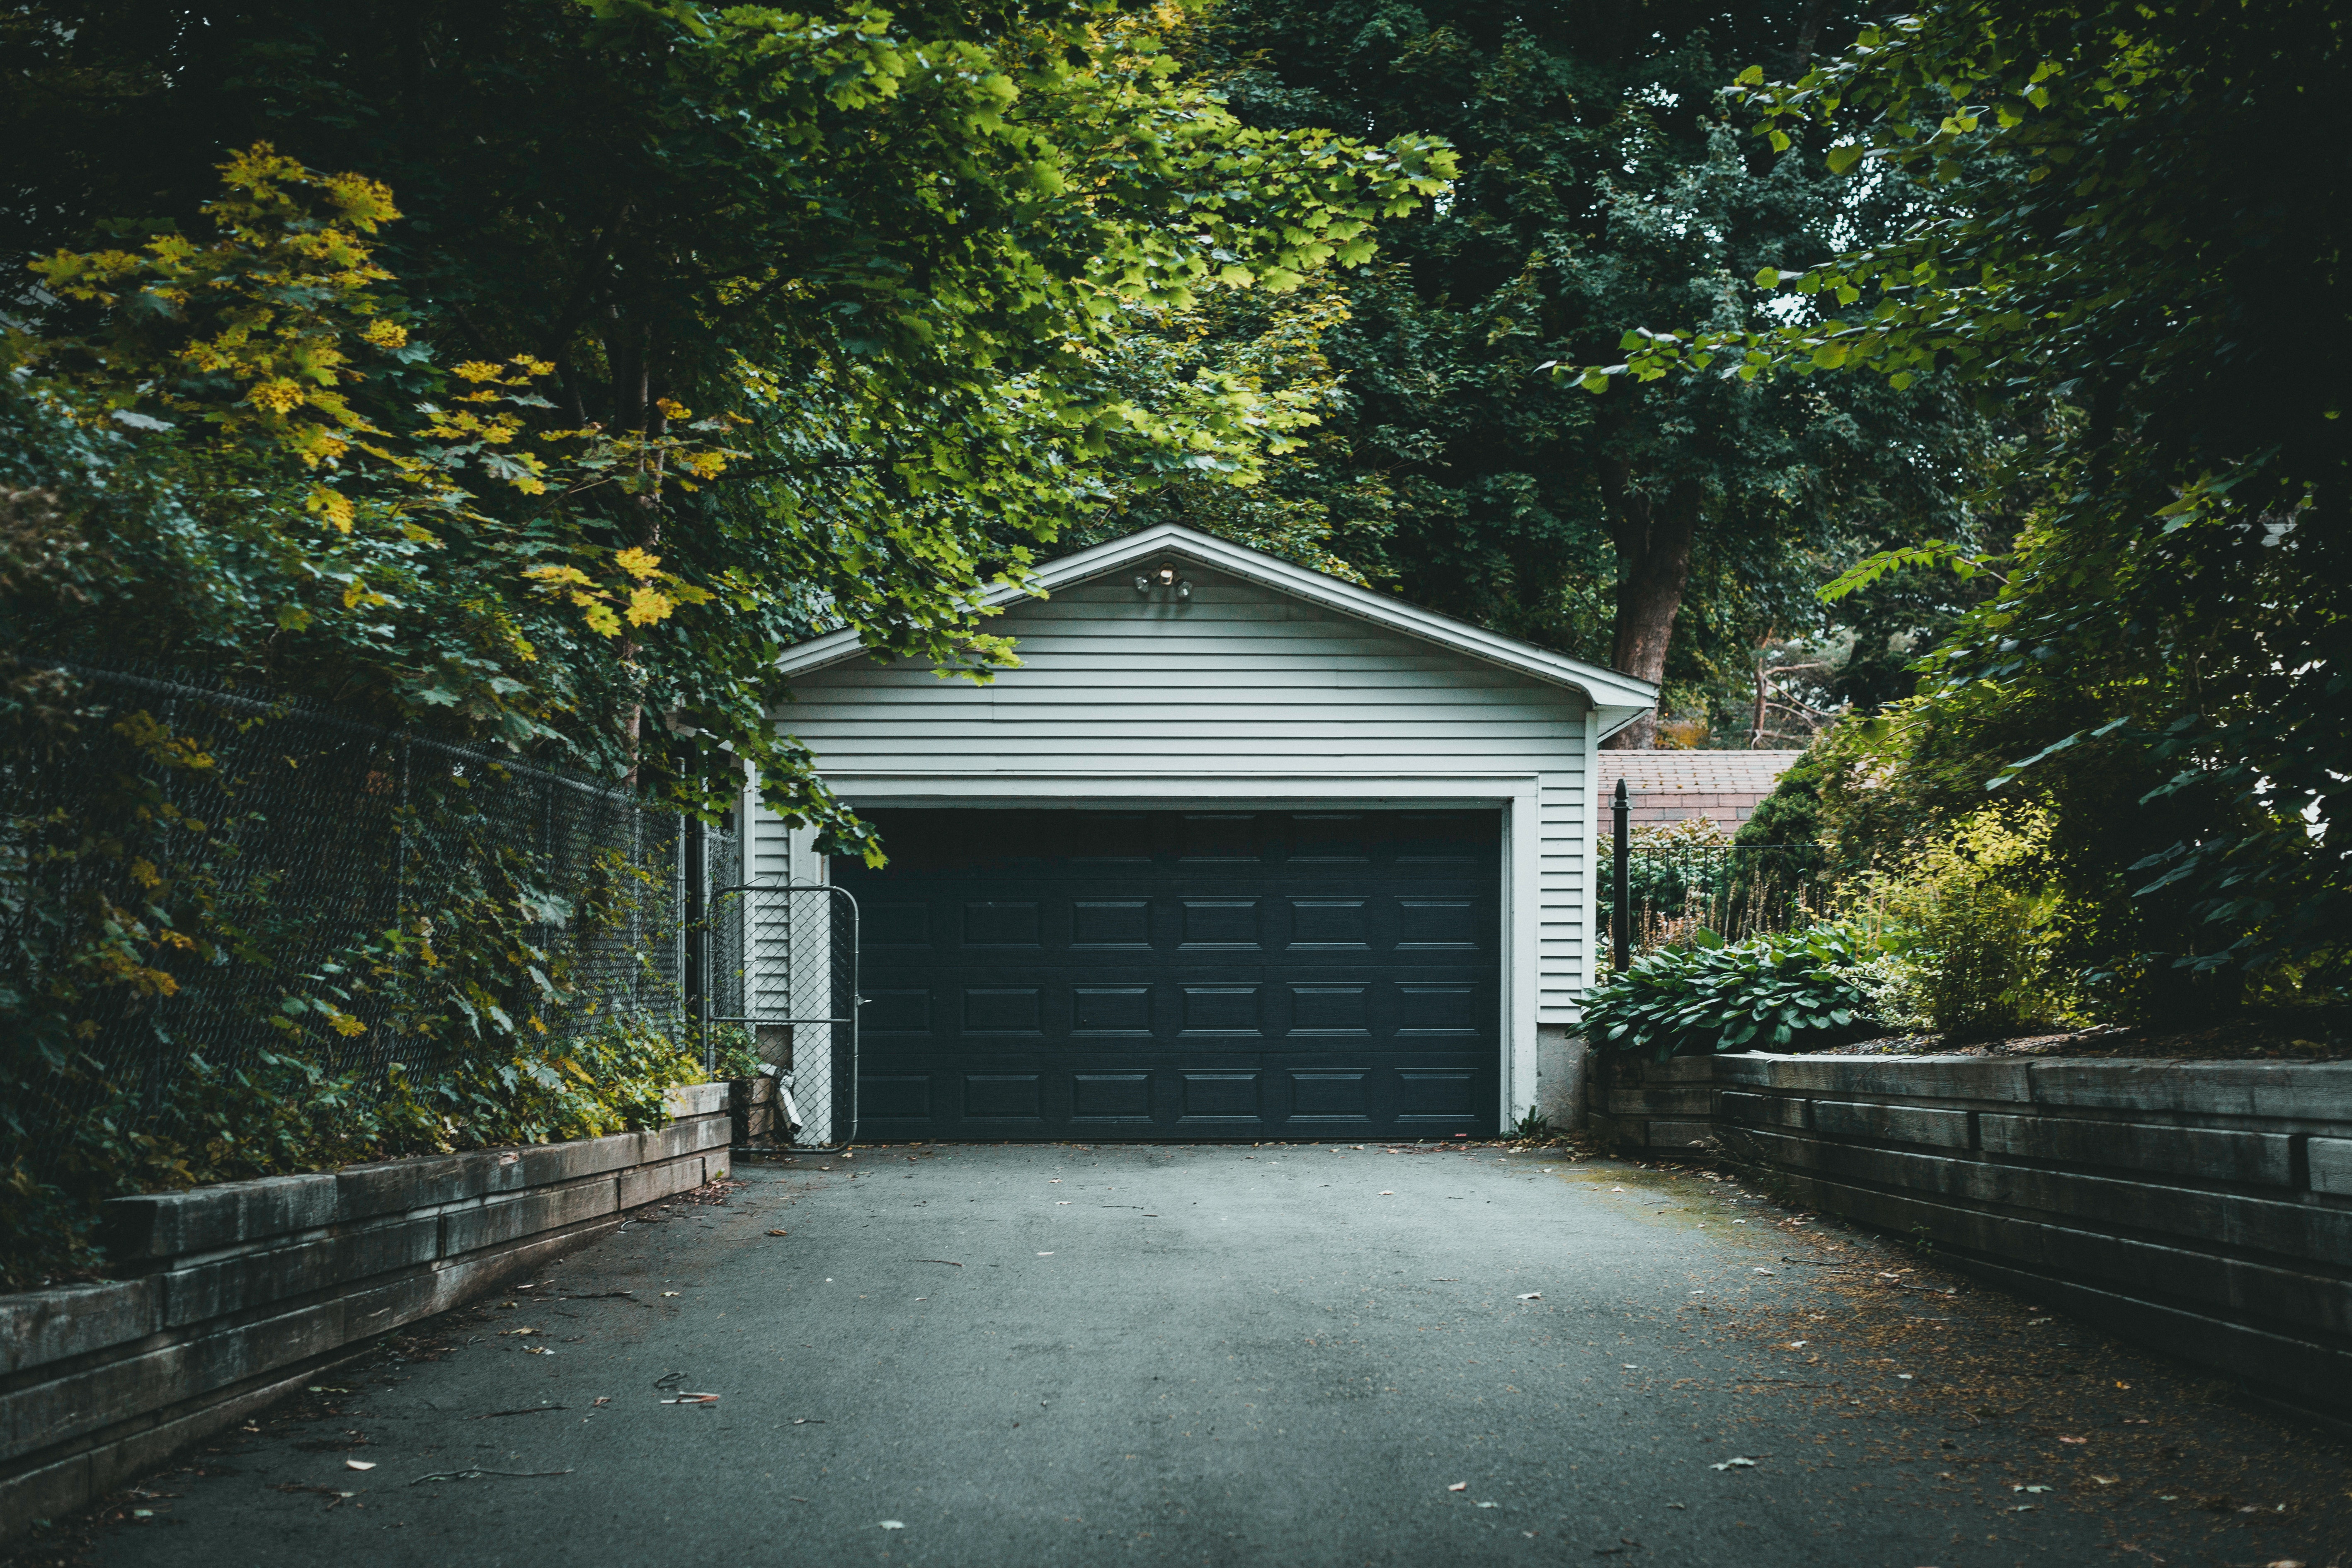 Garage door shut in forested neighborhood